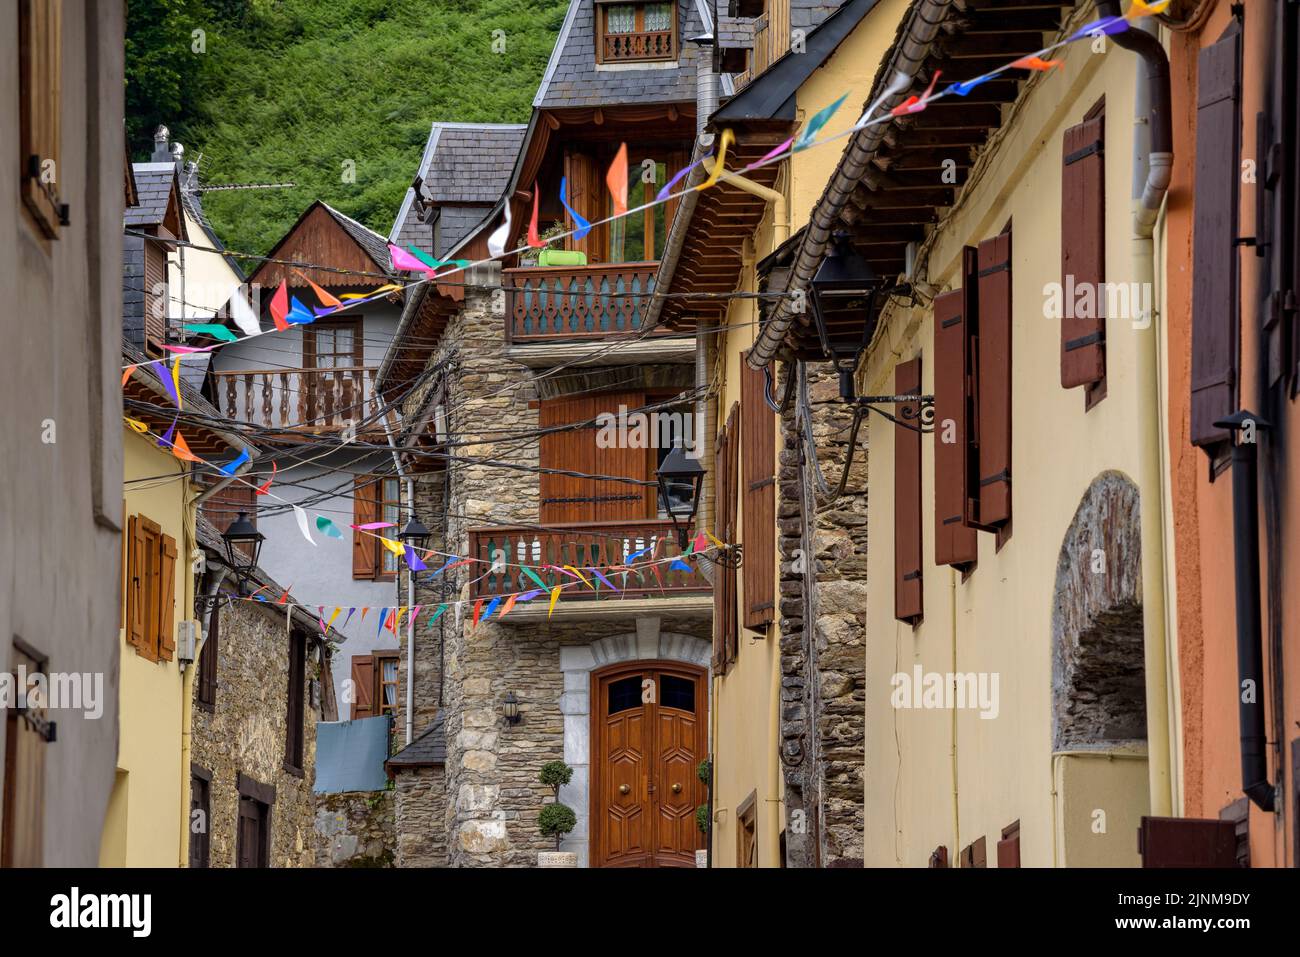 Village des les décoré pour le festival de Sant Joan en raison du solstice d'été (Vallée de l'Aran, Lleida, Catalogne, Espagne, Pyrénées) Banque D'Images